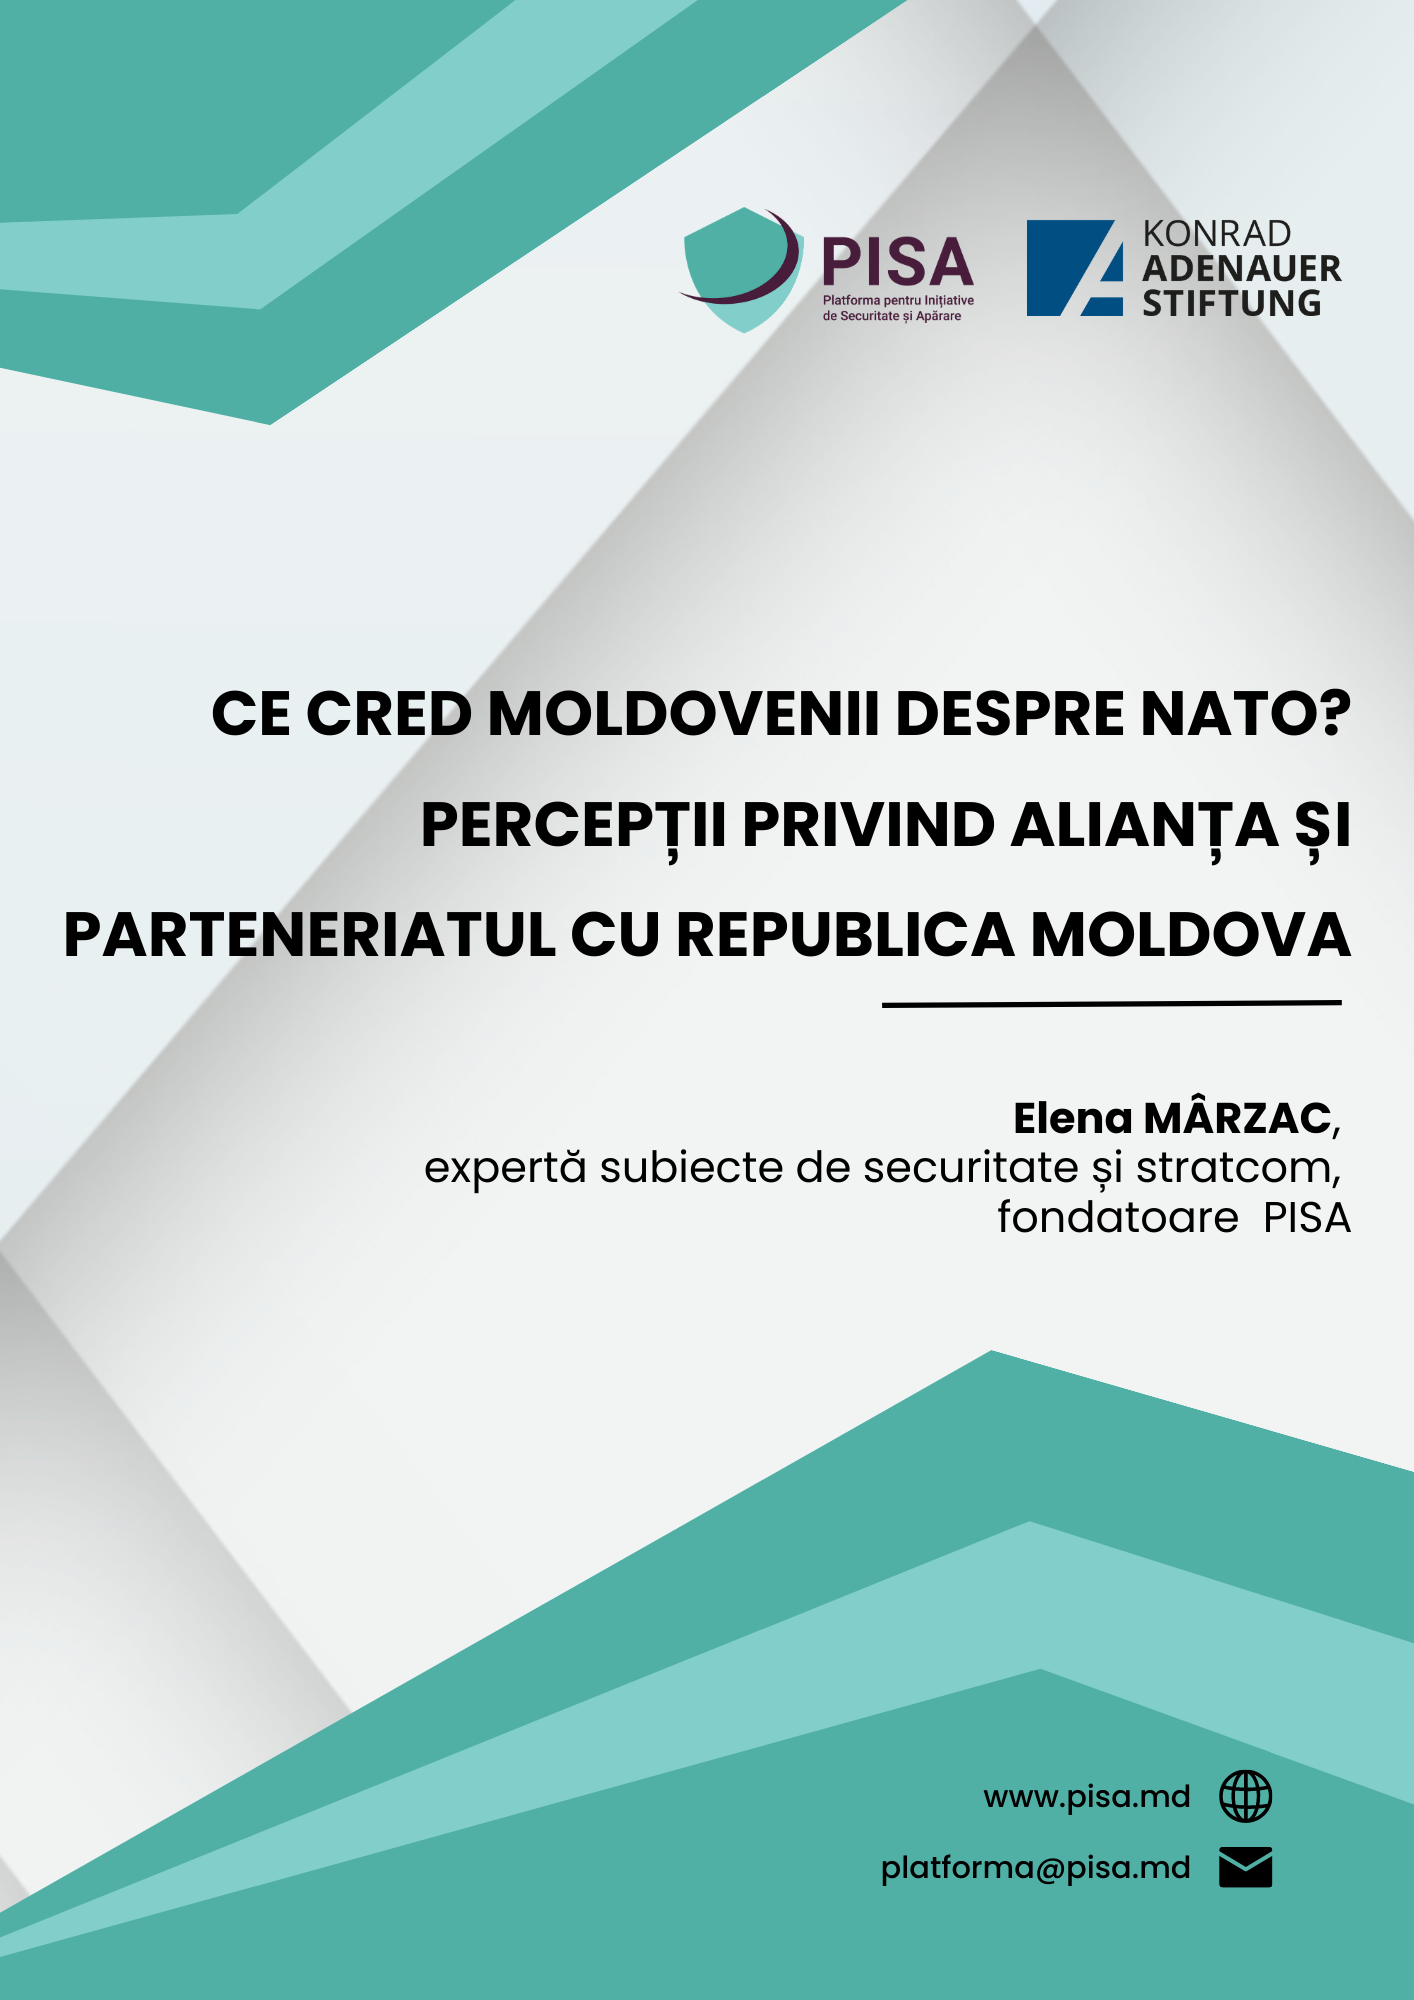 Ce cred moldovenii despre NATO? Percepții privind Alianța și parteneriatul cu Republica Moldova.